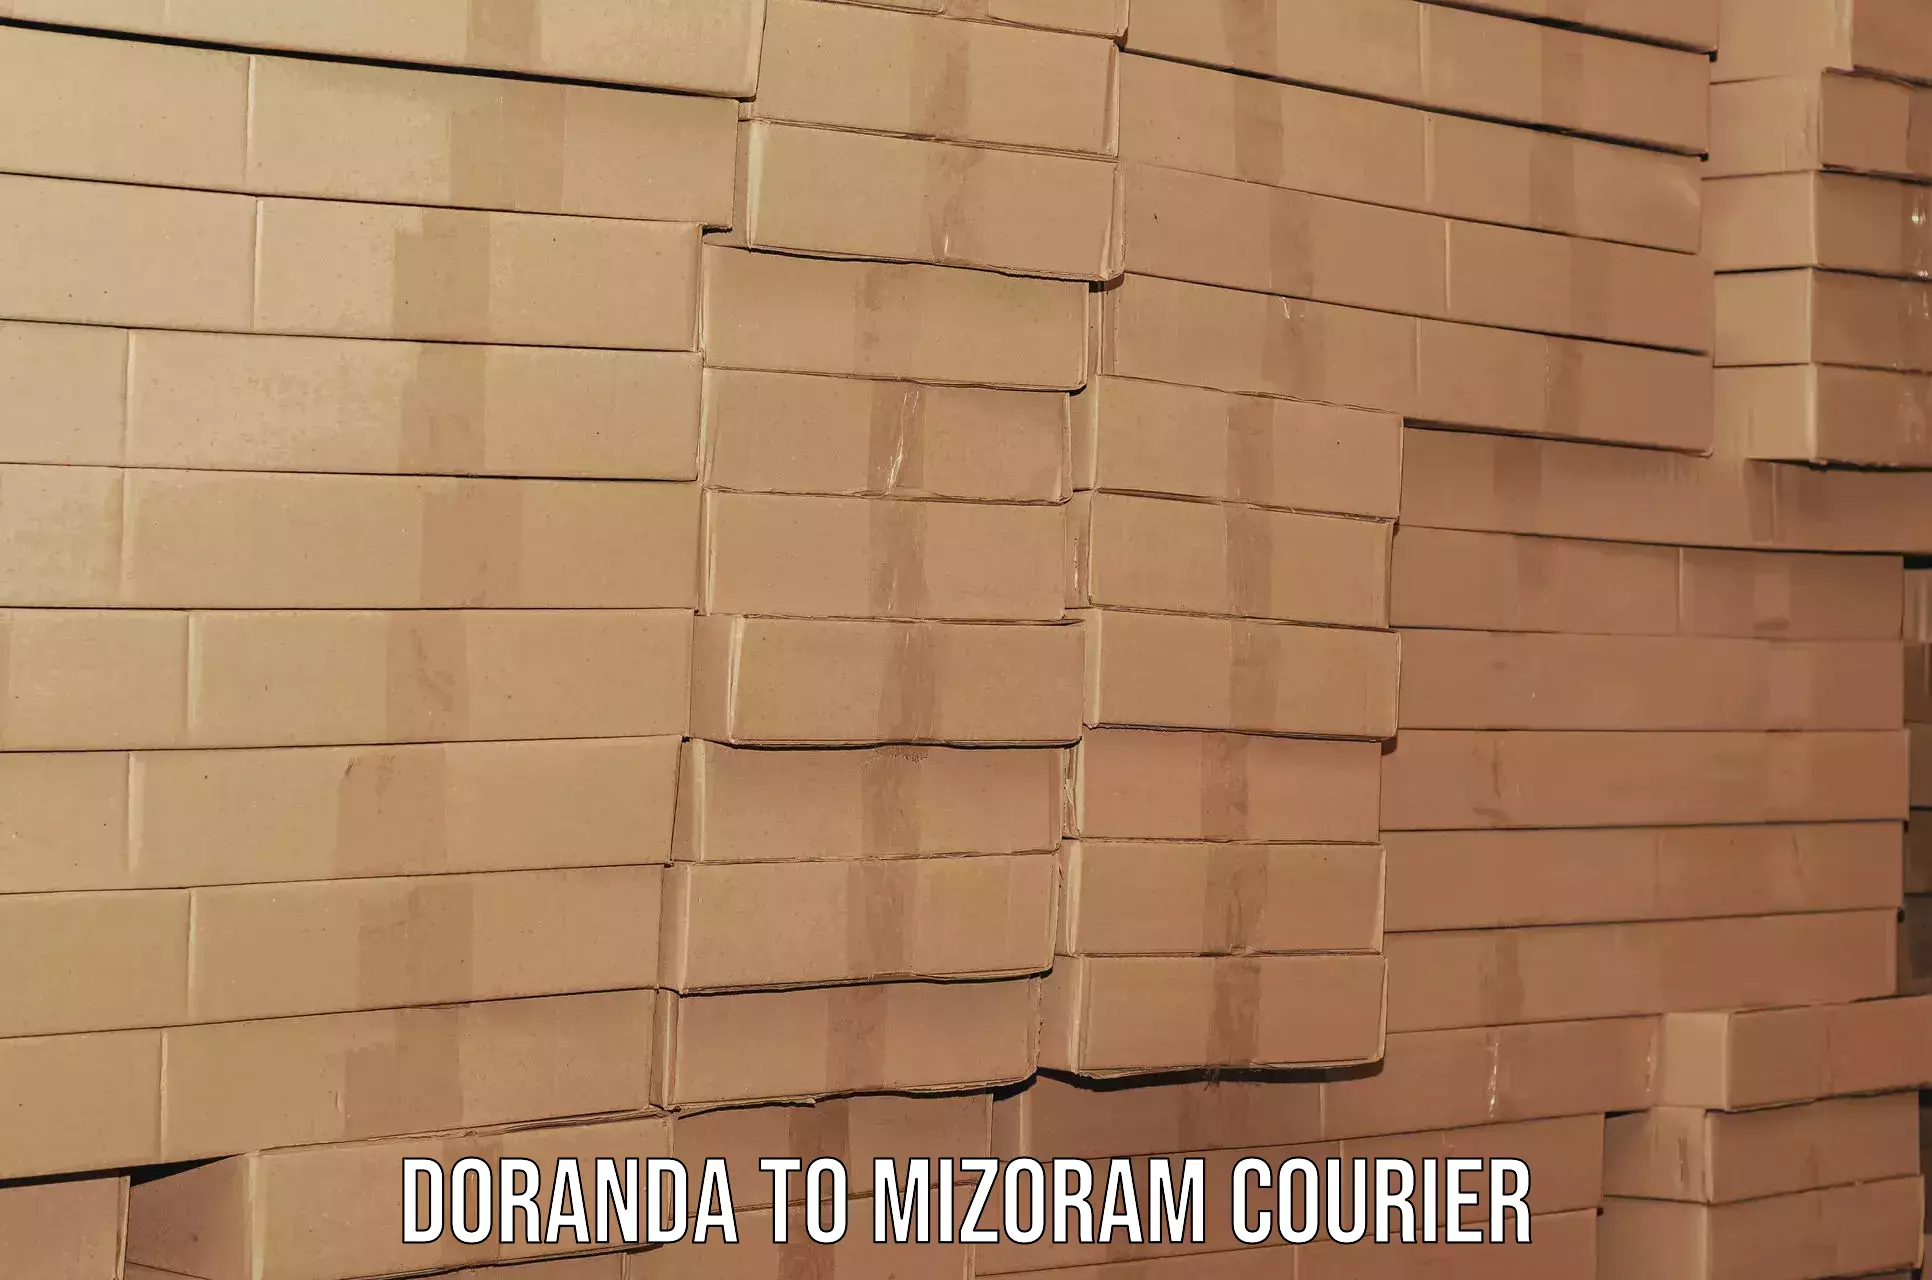 Reliable moving assistance Doranda to Mizoram